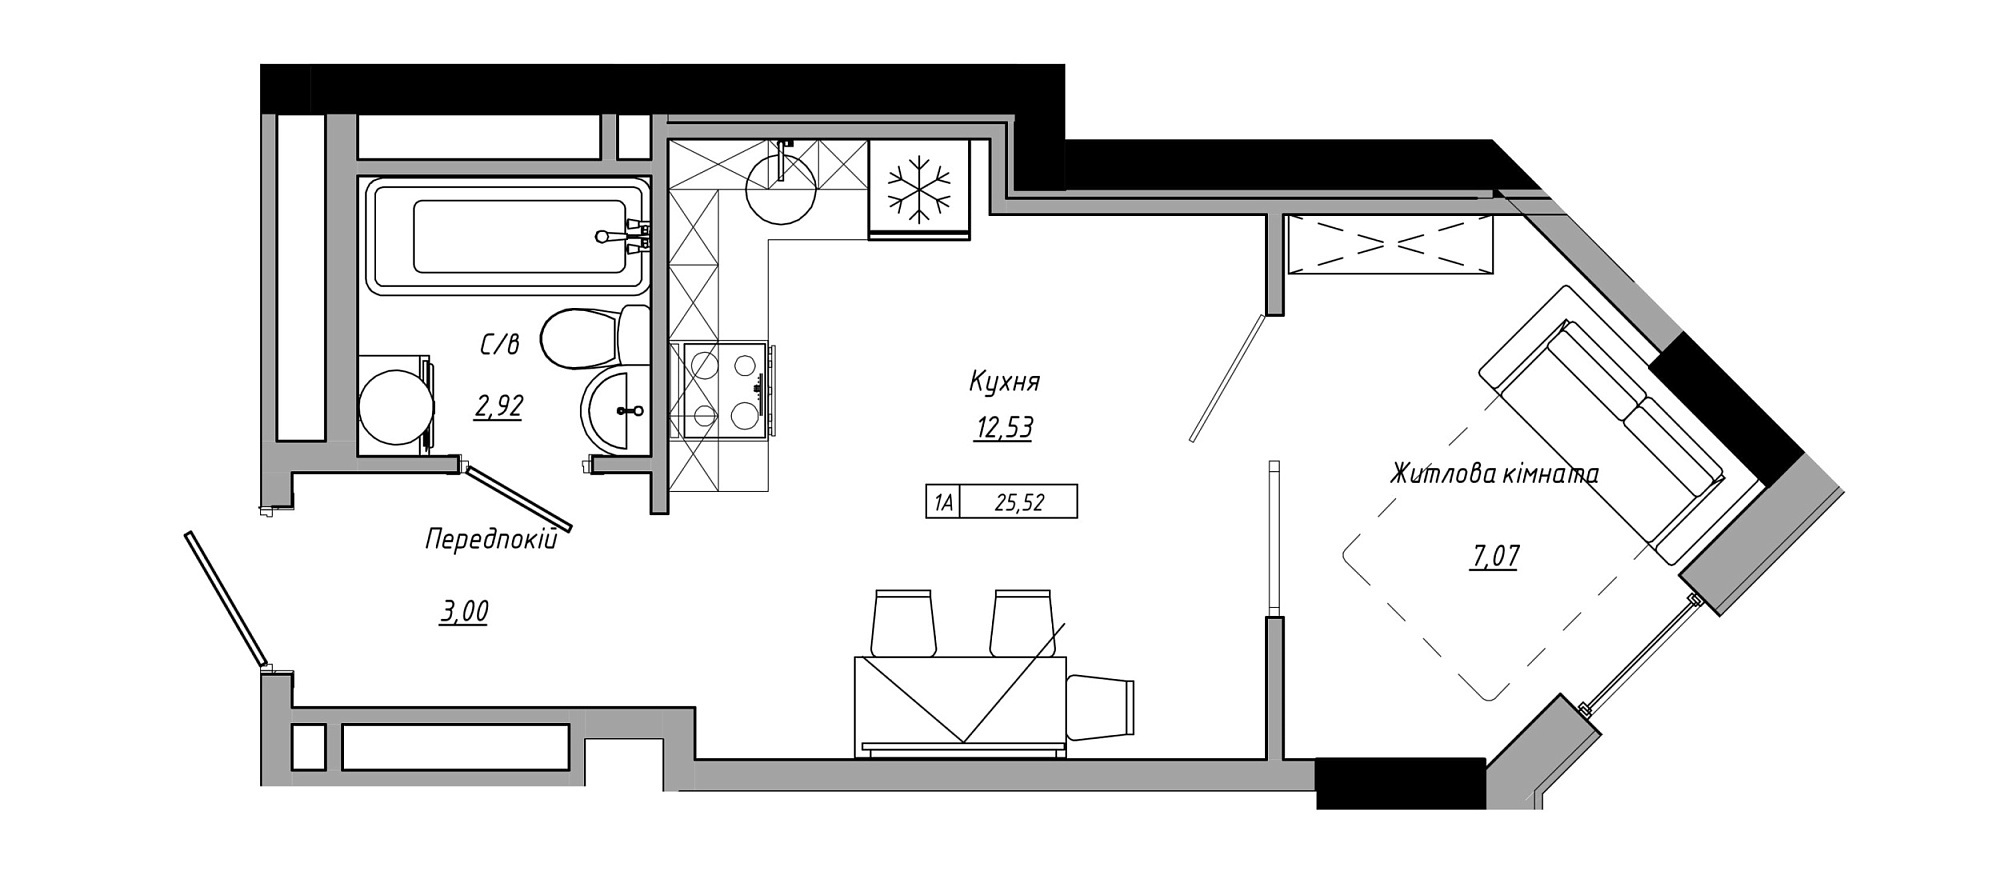 Планування 1-к квартира площею 25.52м2, AB-21-09/00001.